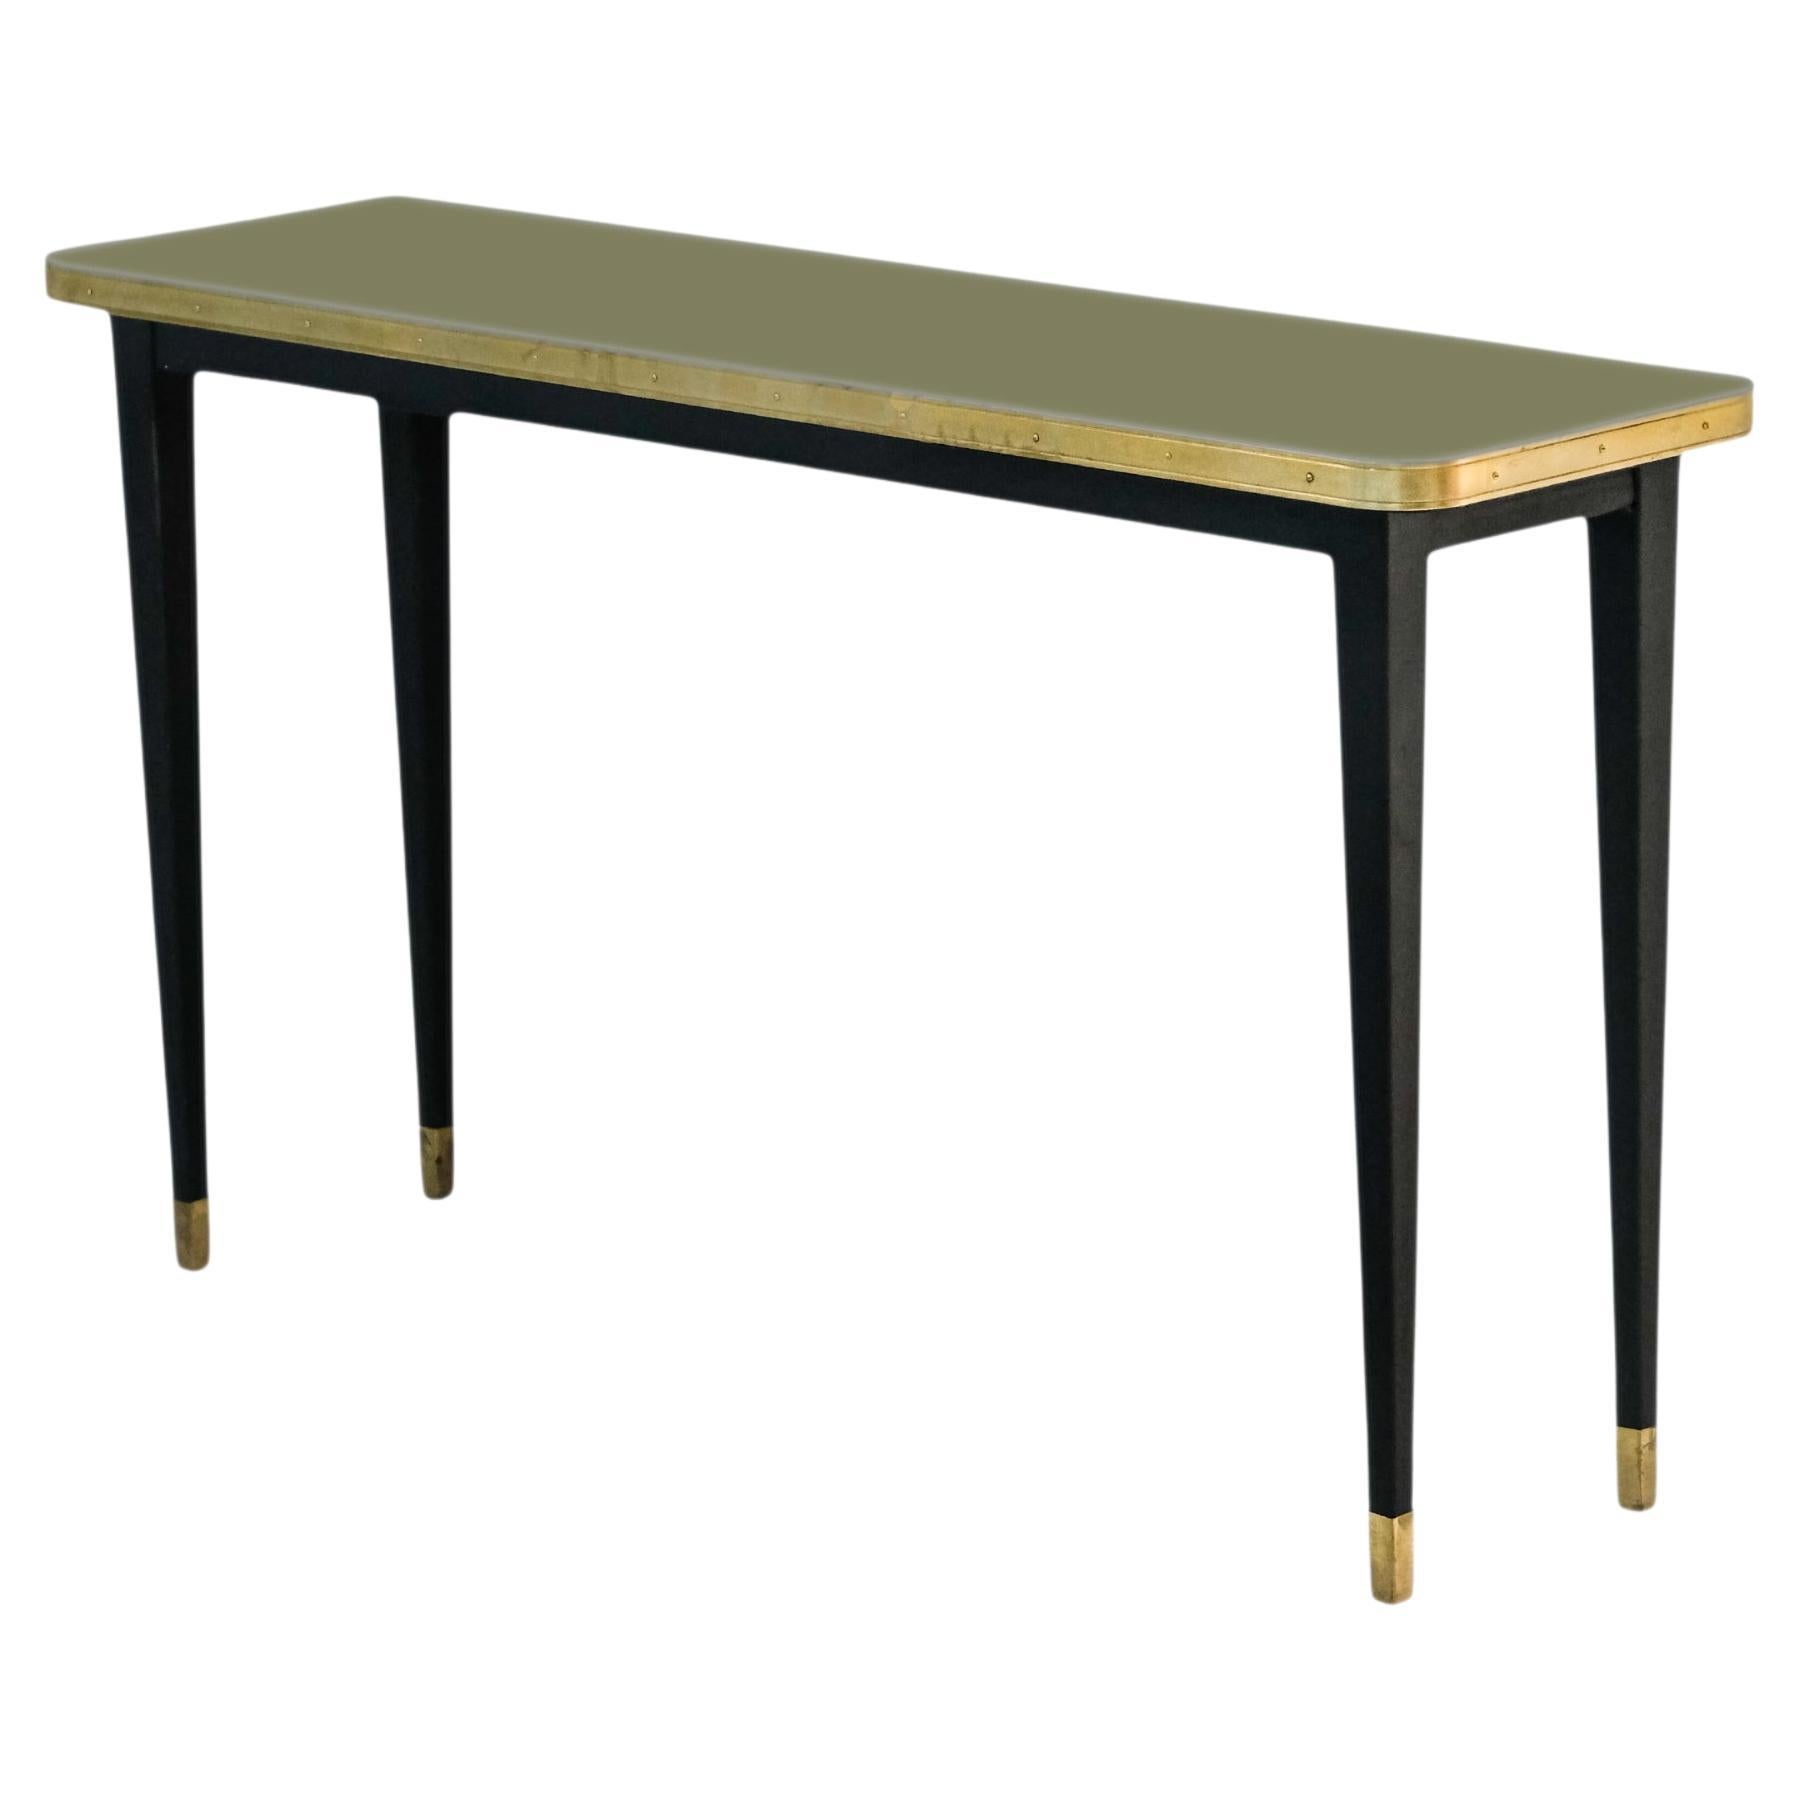 Console Table, High Gloss Laminate & Brass Details, Kashmir Green - M